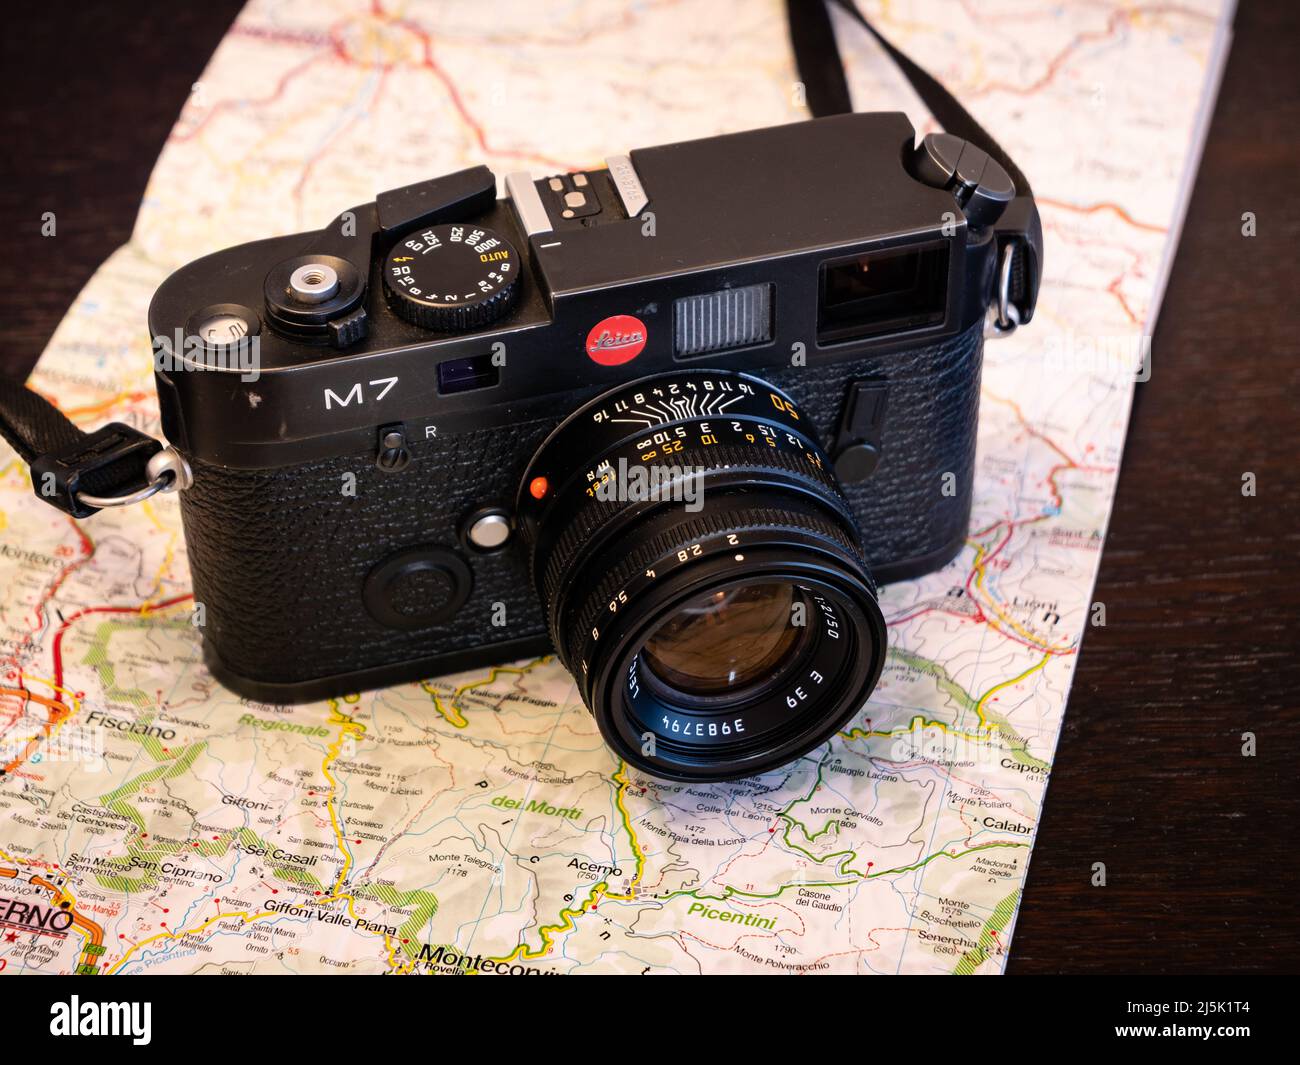 Wetzlar, Alemania - Enero 5 2020: Cámara de Fotografía Analógica Leica M7 en acabado negro con lente Summicrón de 50 mm. Foto de stock